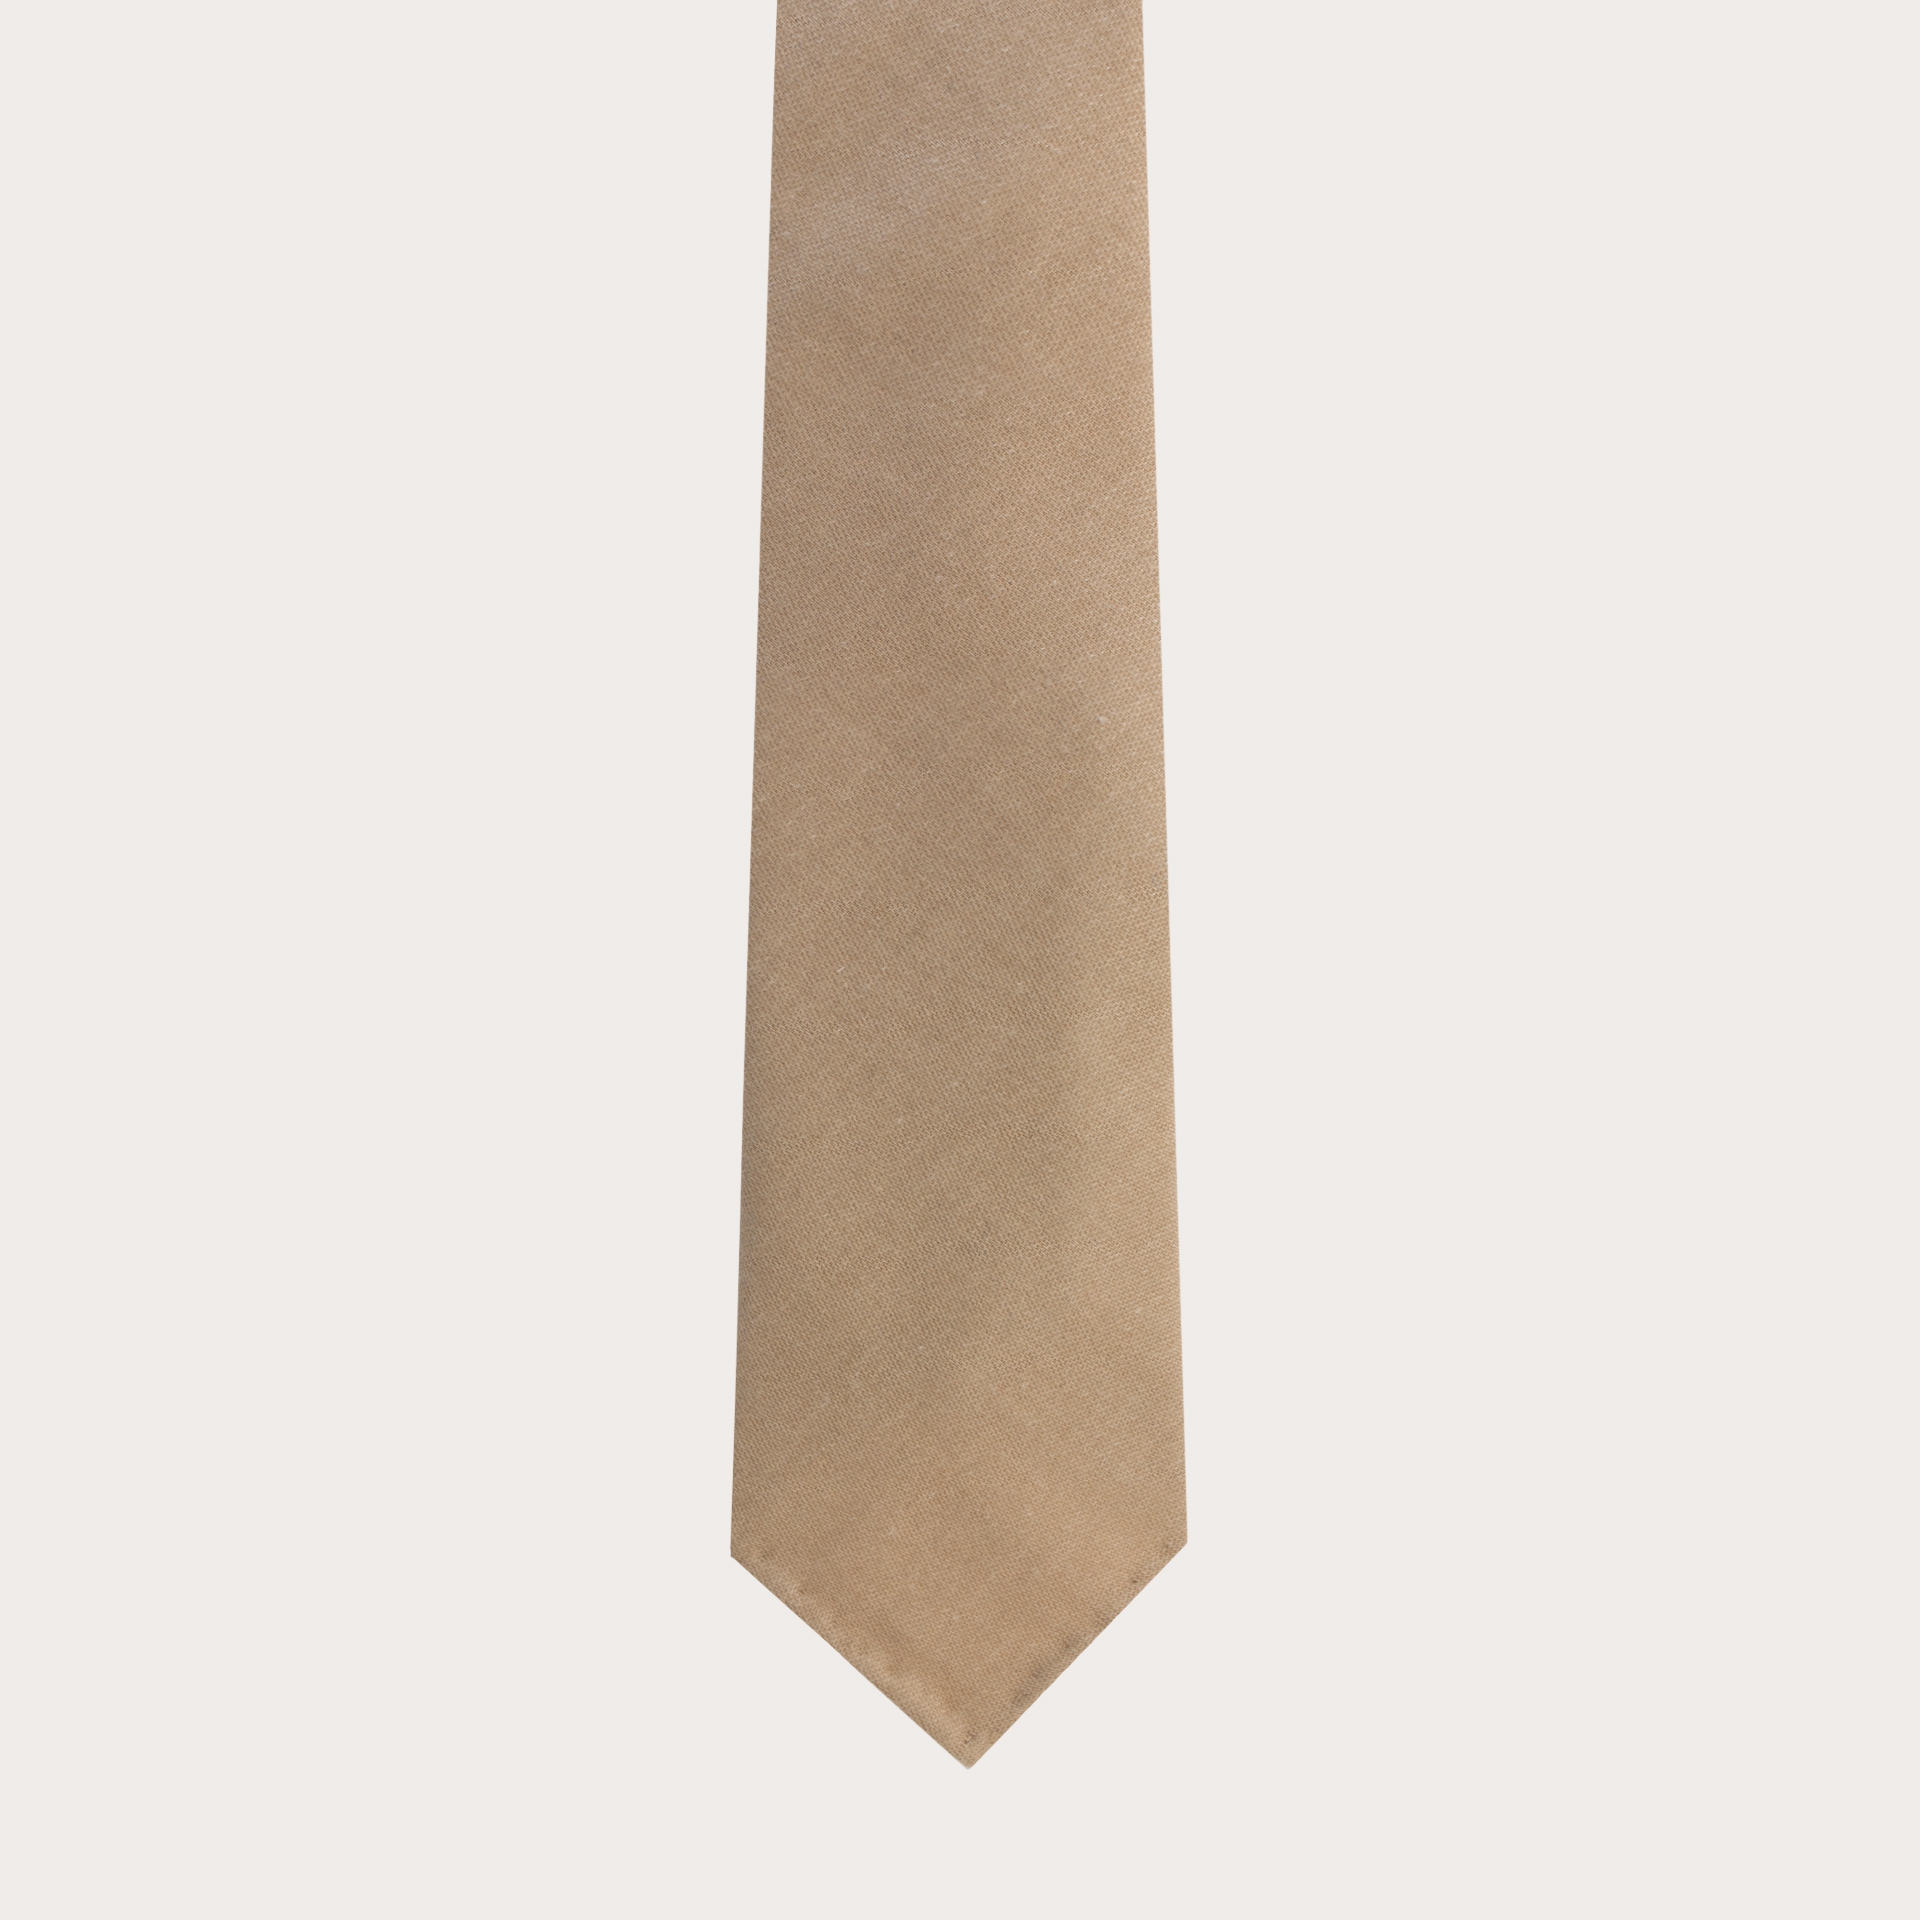 Cravatta sfoderata in lana e canapa, beige